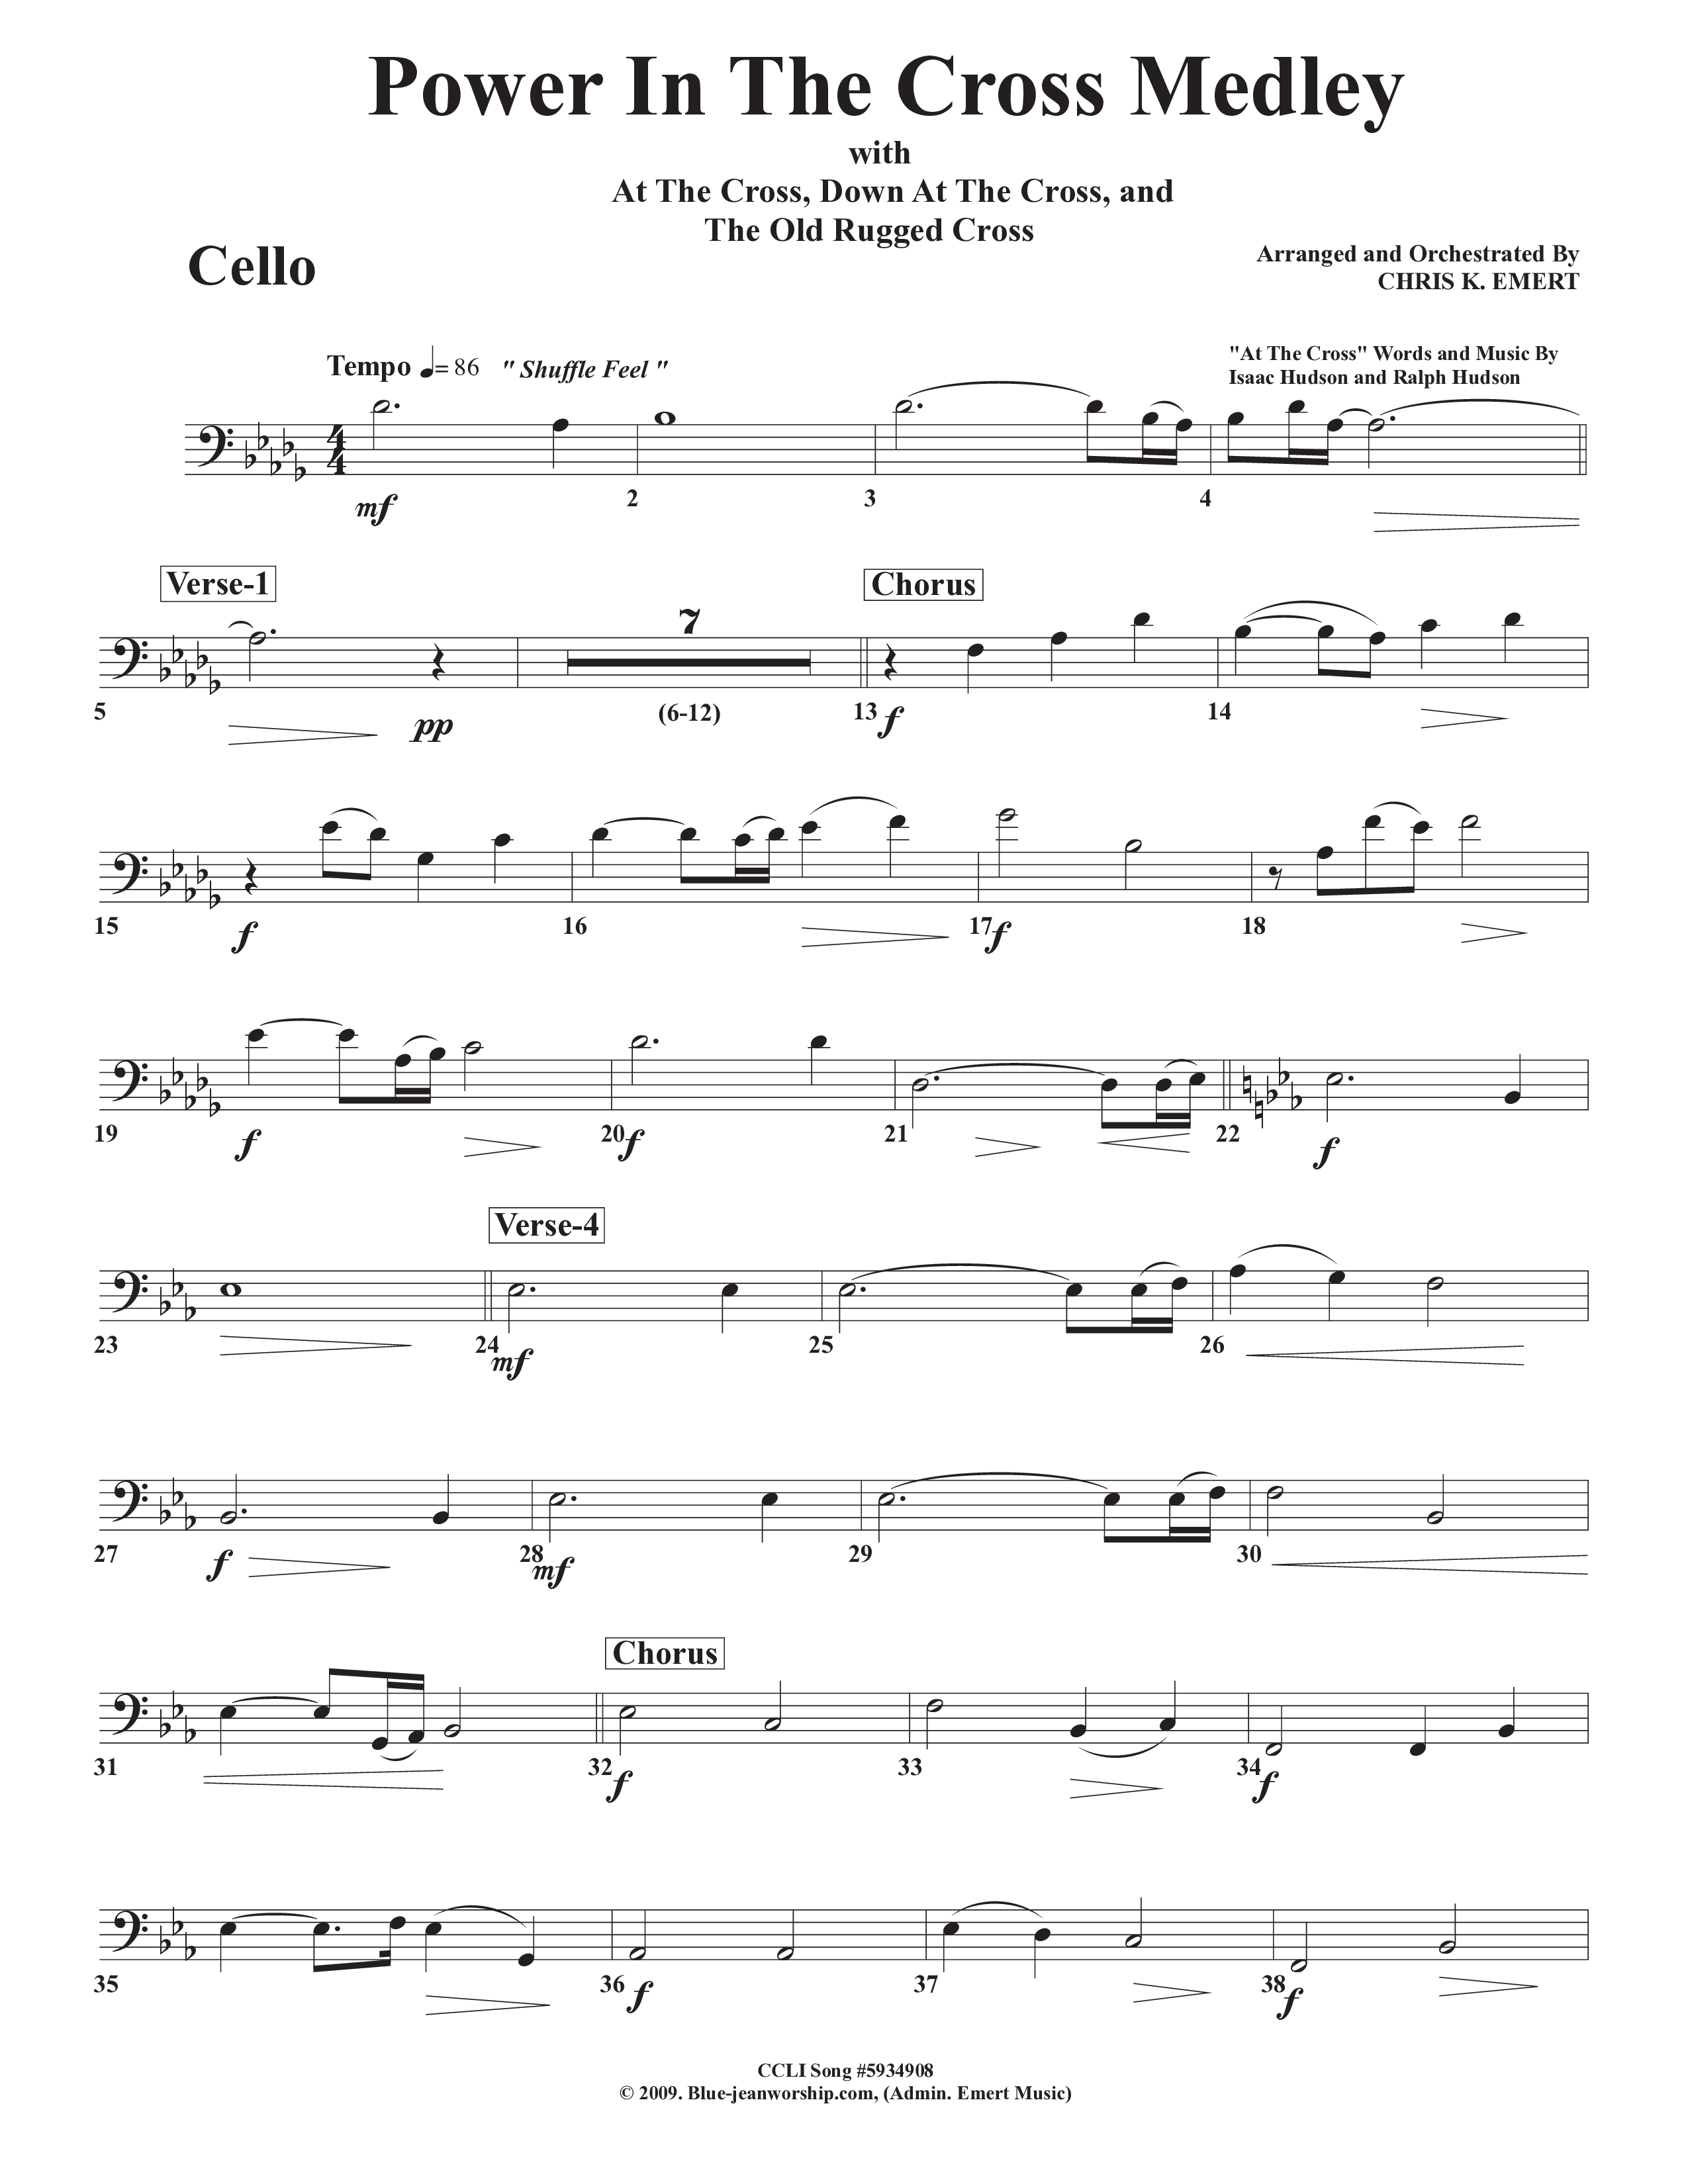 Power In The Cross Medley Cello (Chris Emert)